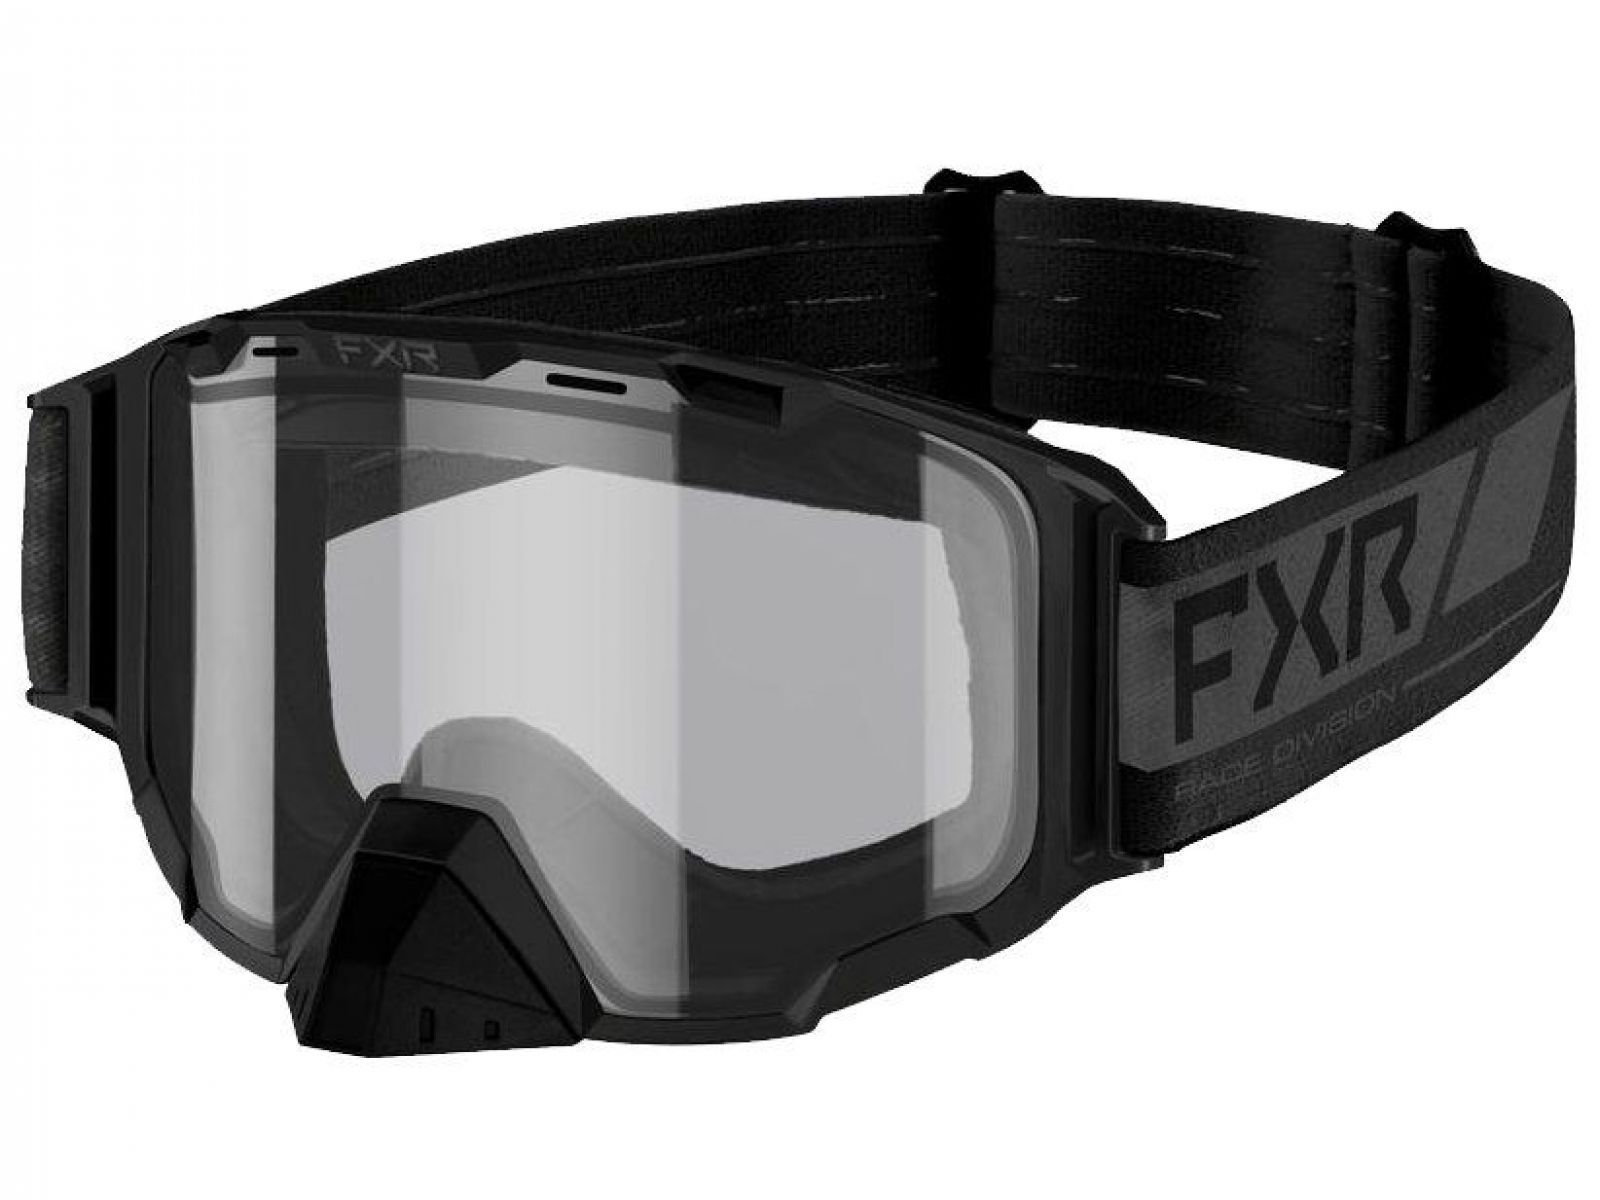 Очки снегоходные с электроподогревом FXR MAVERICK CORDLESS ELECTRIC 22 Black Ops